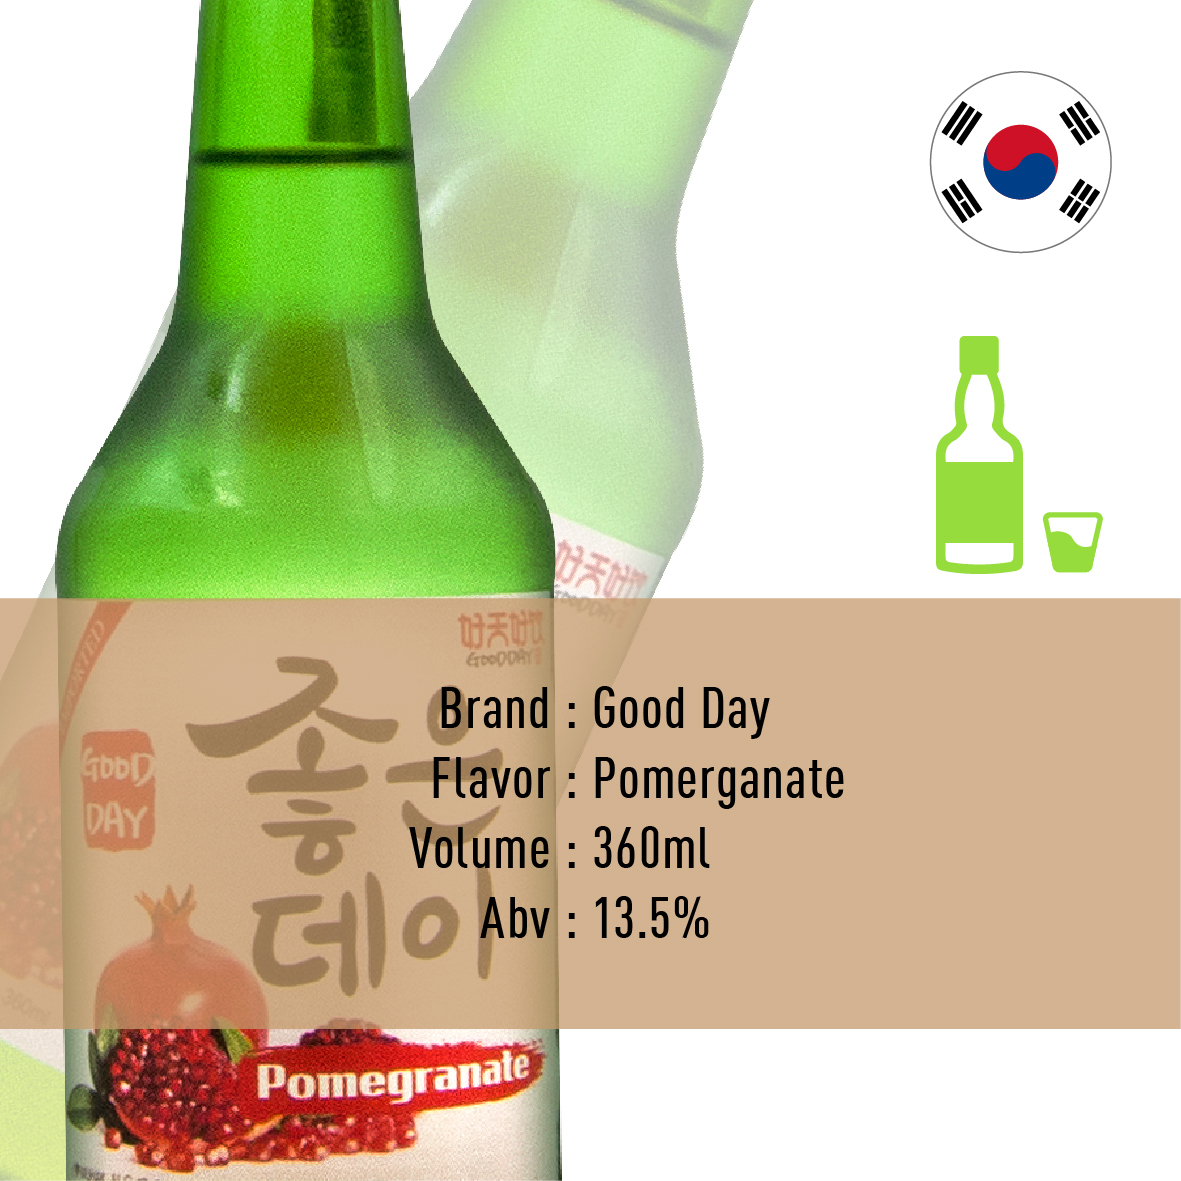 3-GooddaySoju-Pomerganate-Korea-02.jpg